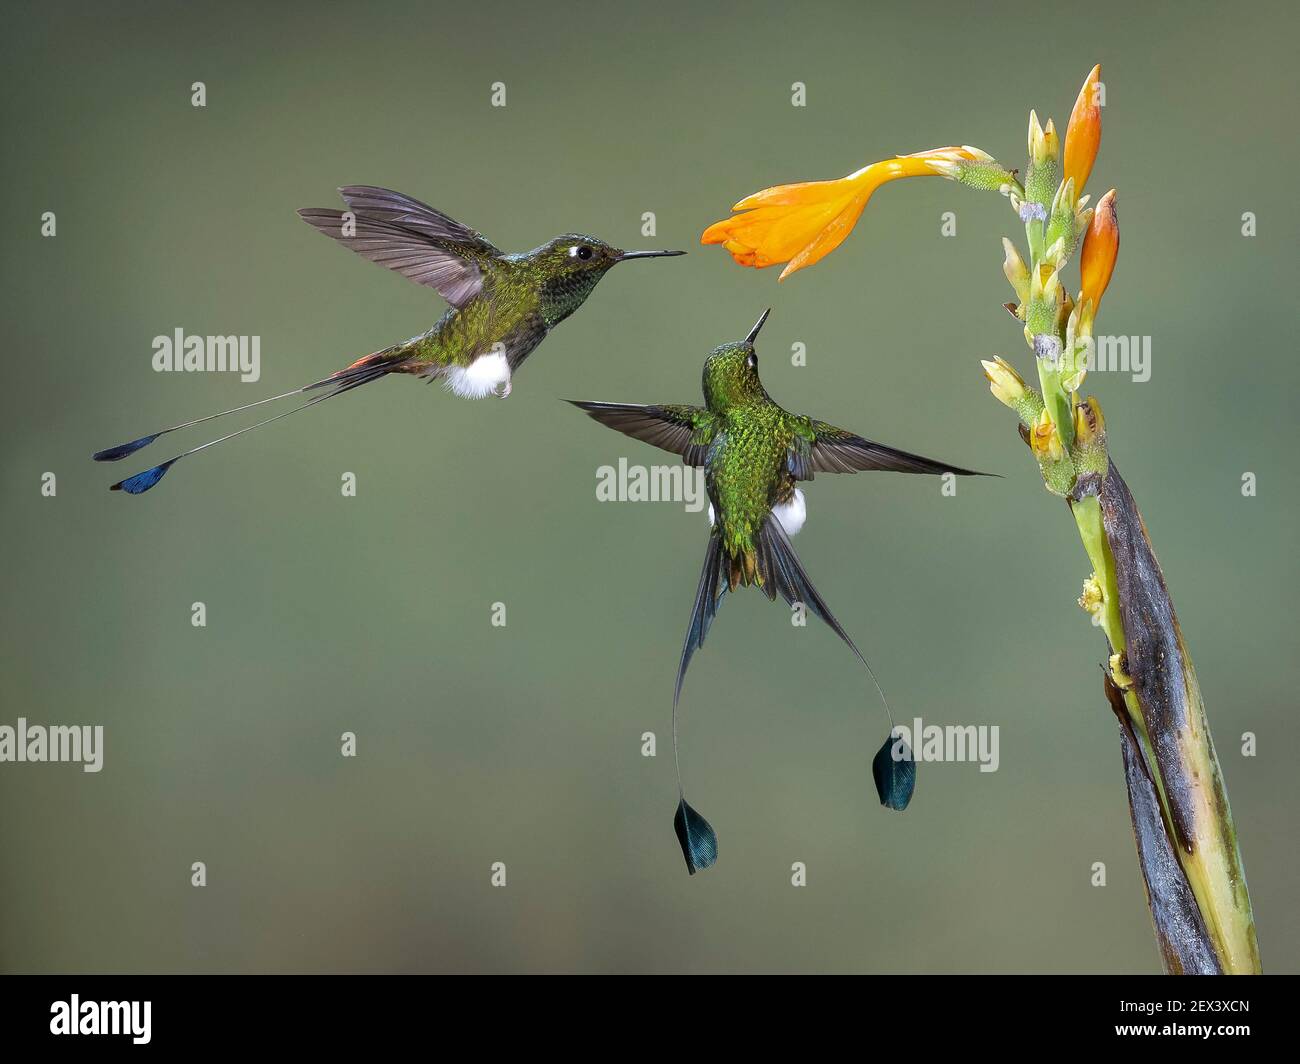 Queue de raquette amorçée (Ocreatus underwoodii), deux oiseaux se nourrissant de fleurs, Tandalapa (Équateur) Banque D'Images